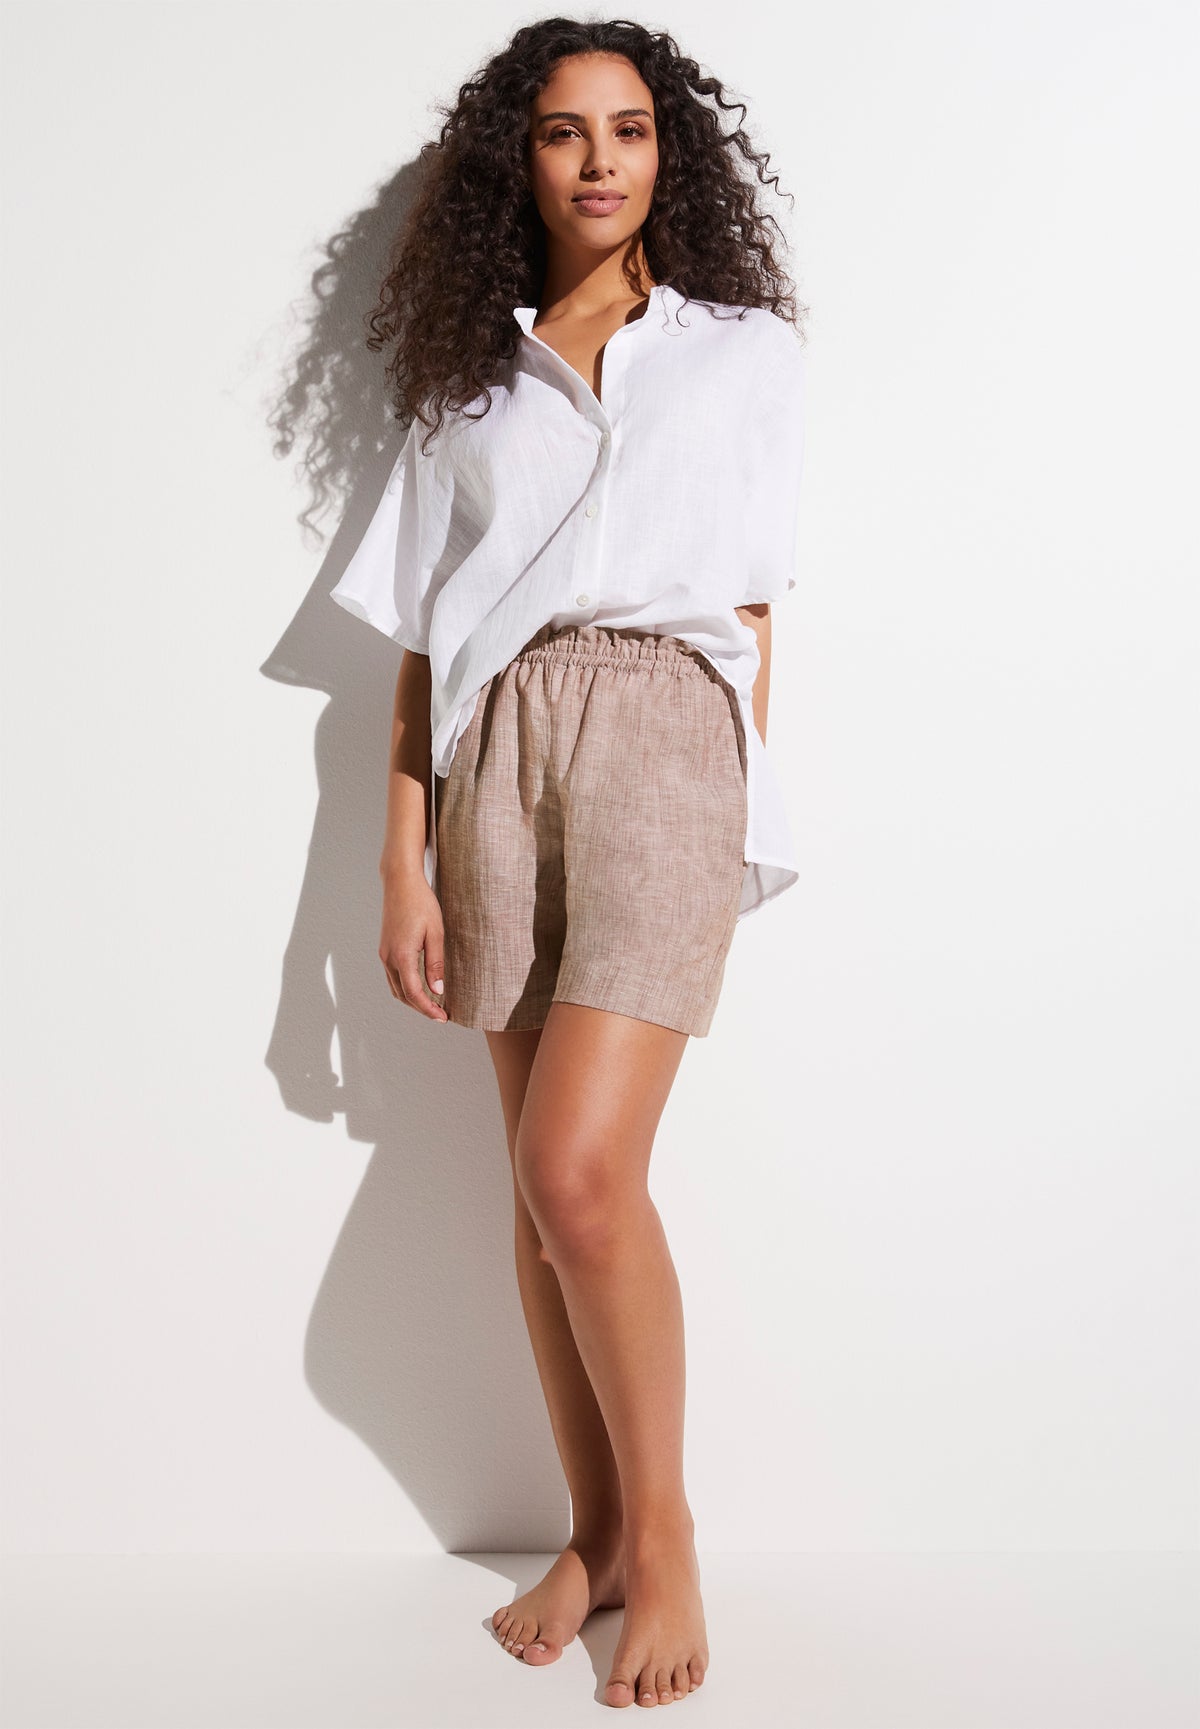 Linen Blend | Button Front Shirt Short Sleeve - white